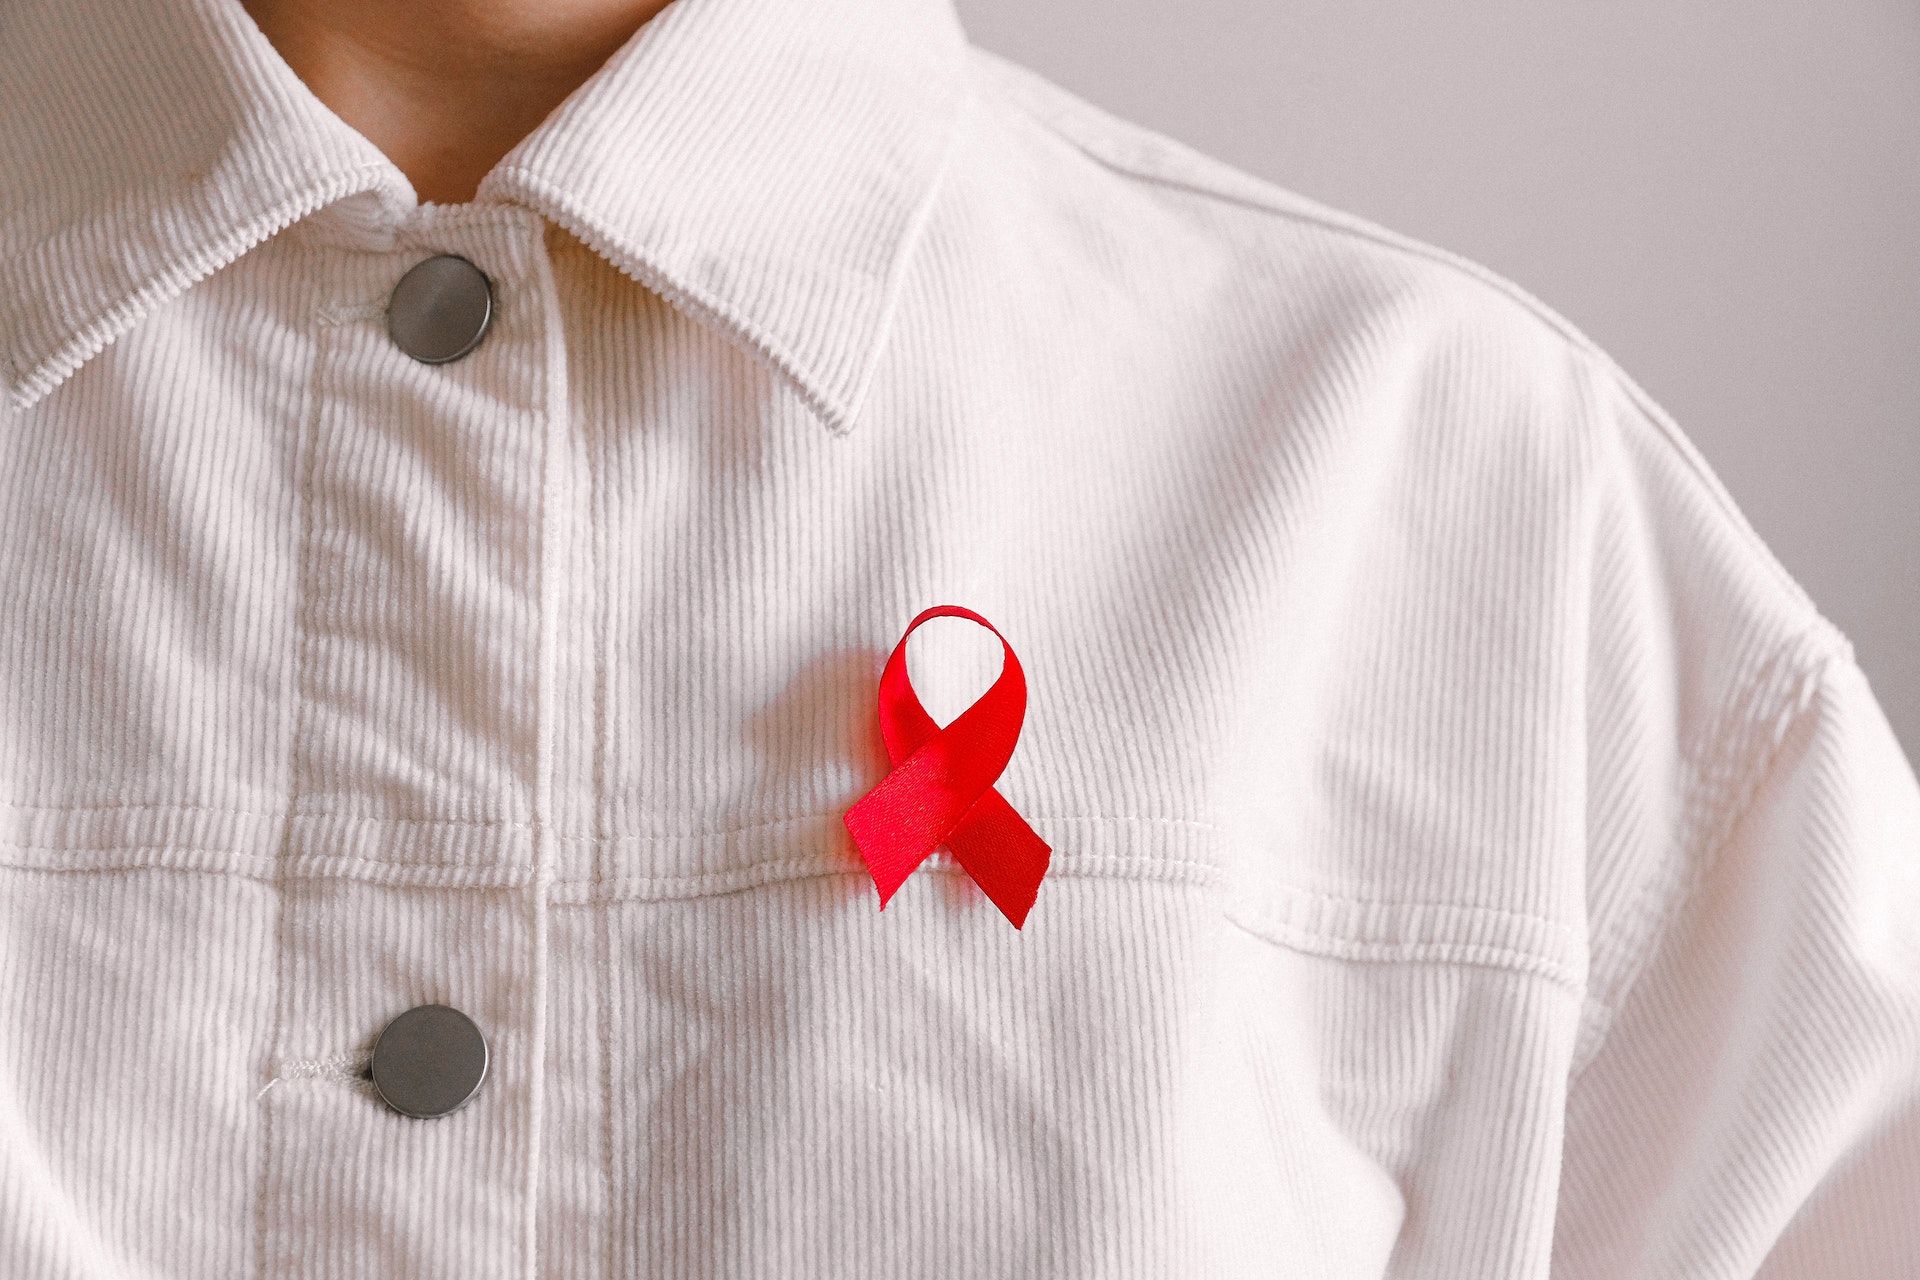 Шестой человек смог полностью вылечиться от ВИЧ - Здоровье 24